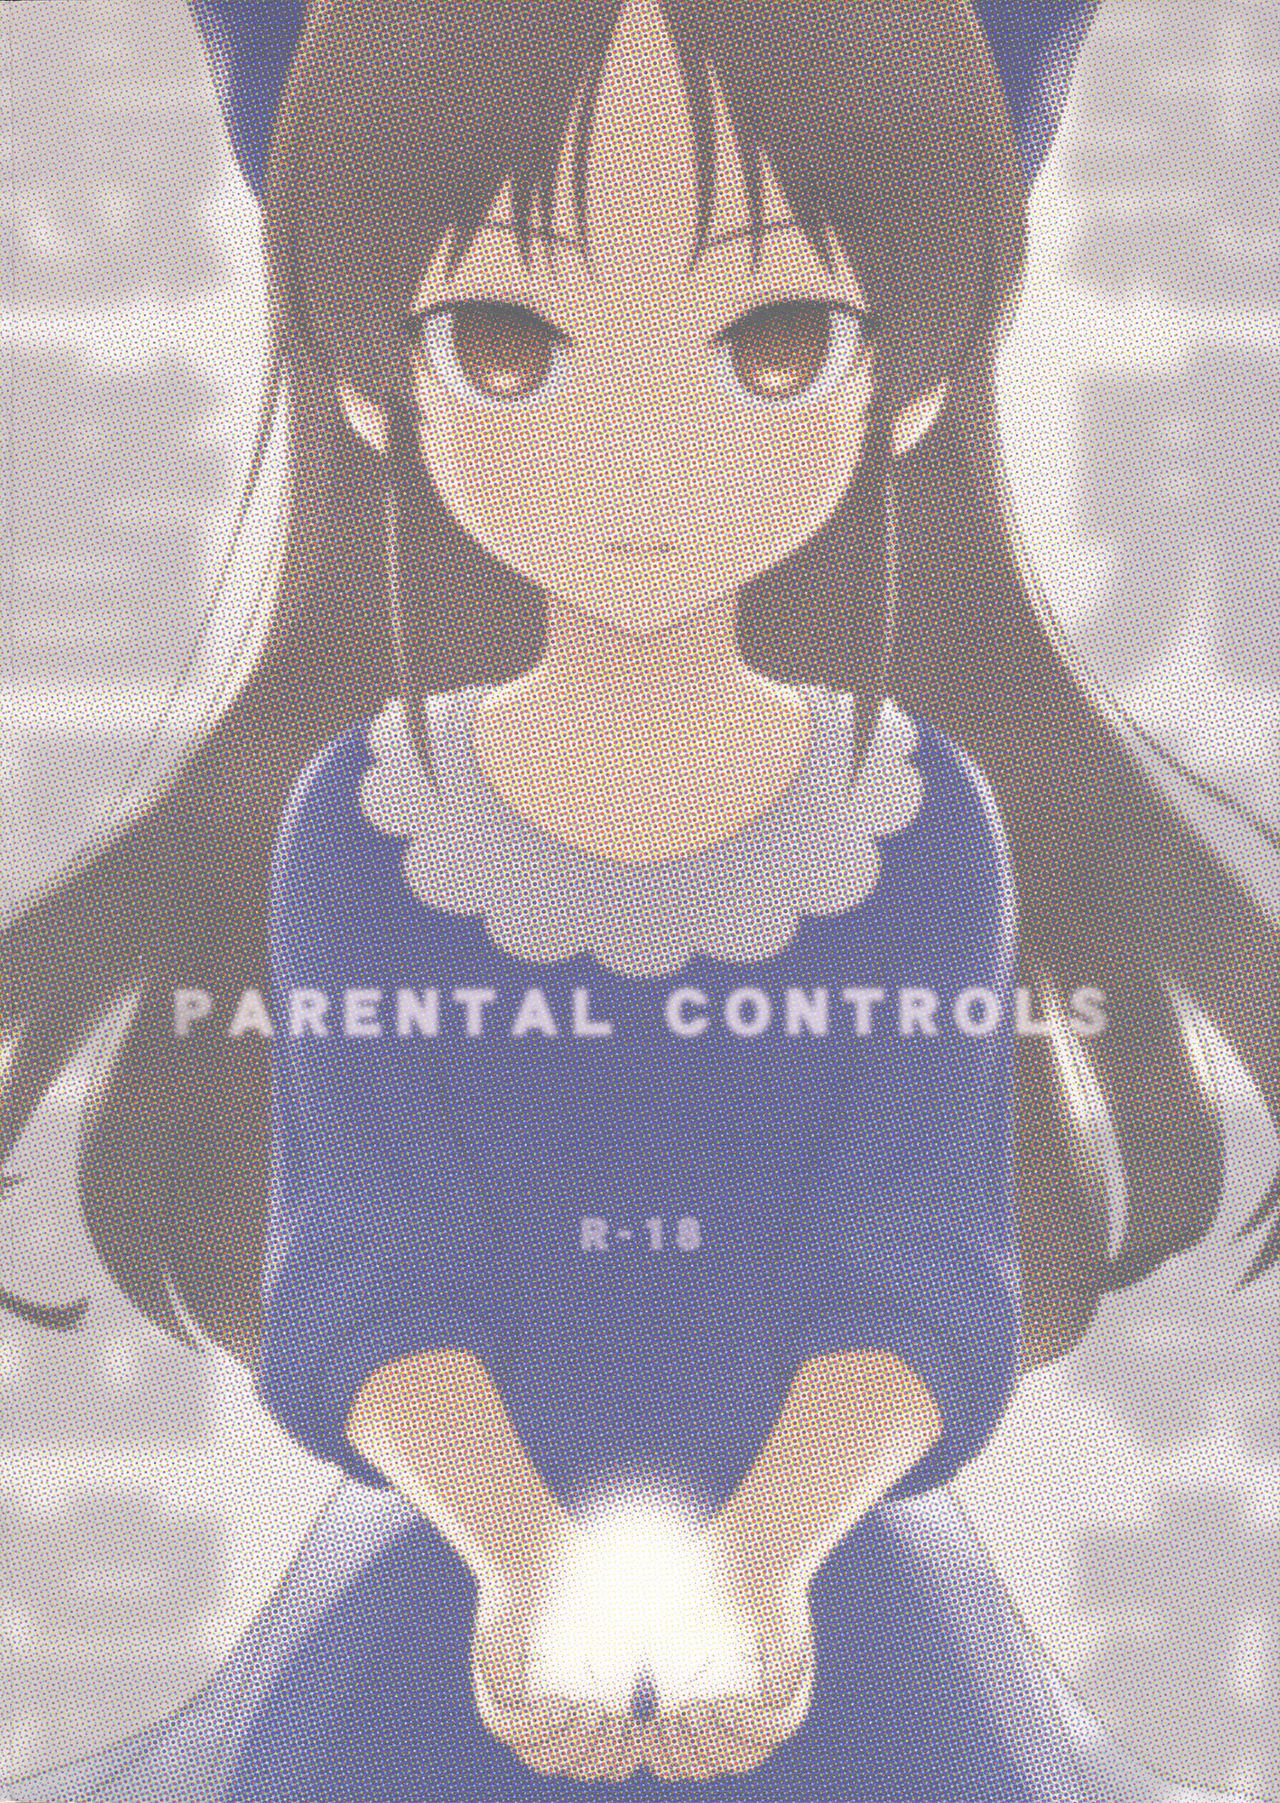 (C95) [愚者枢密院 (惡鬼外導丸)] PARENTAL CONTROLS (アイドルマスター シンデレラガールズ)